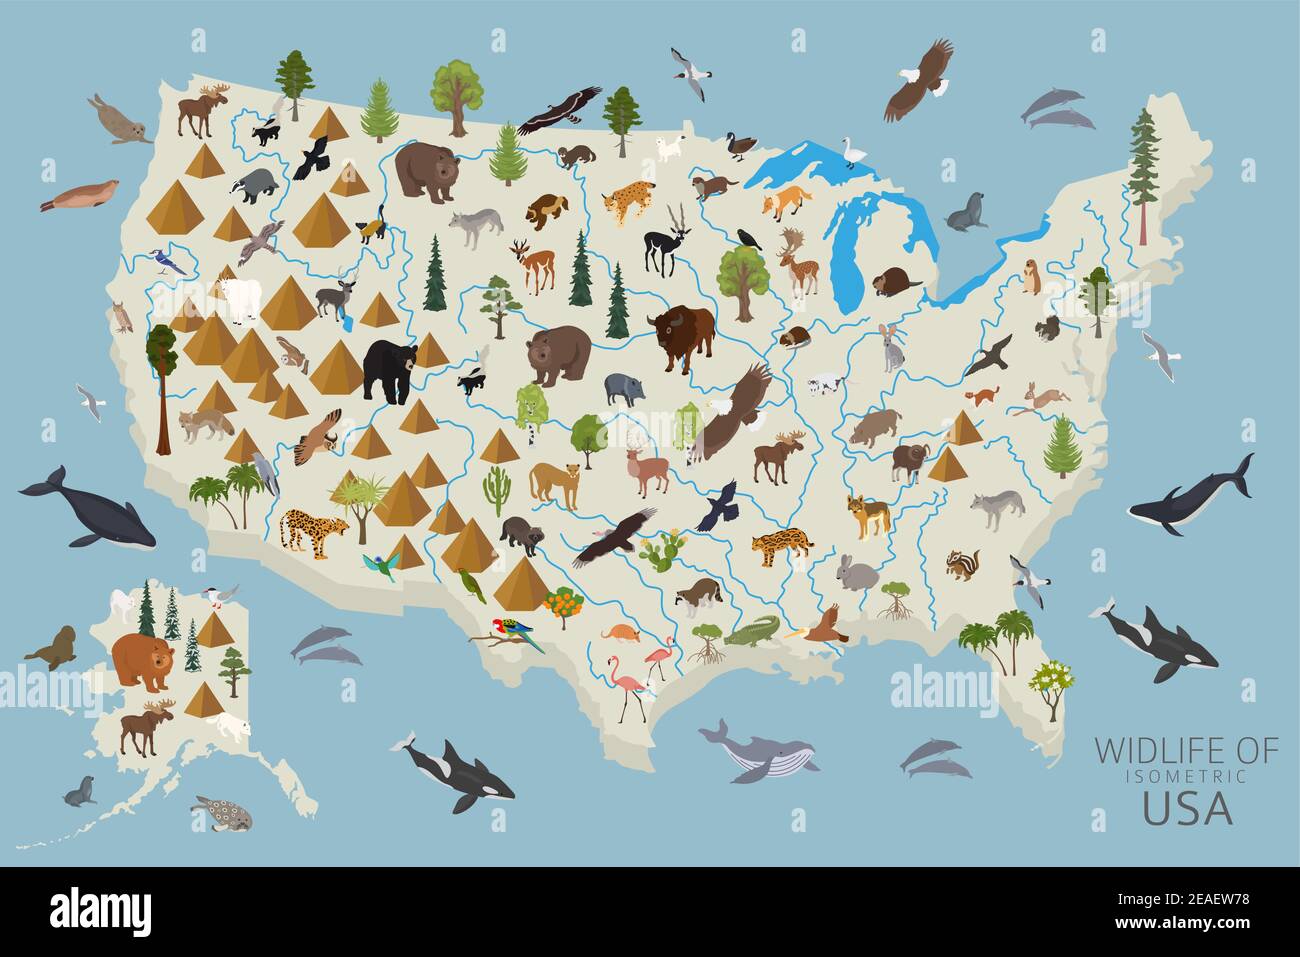 3d isometrico della fauna selvatica degli Stati Uniti. Elementi costruttivi di animali, uccelli e piante isolati su set bianco. Crea la tua raccolta di infografiche geografiche. Illustrazione Vettoriale